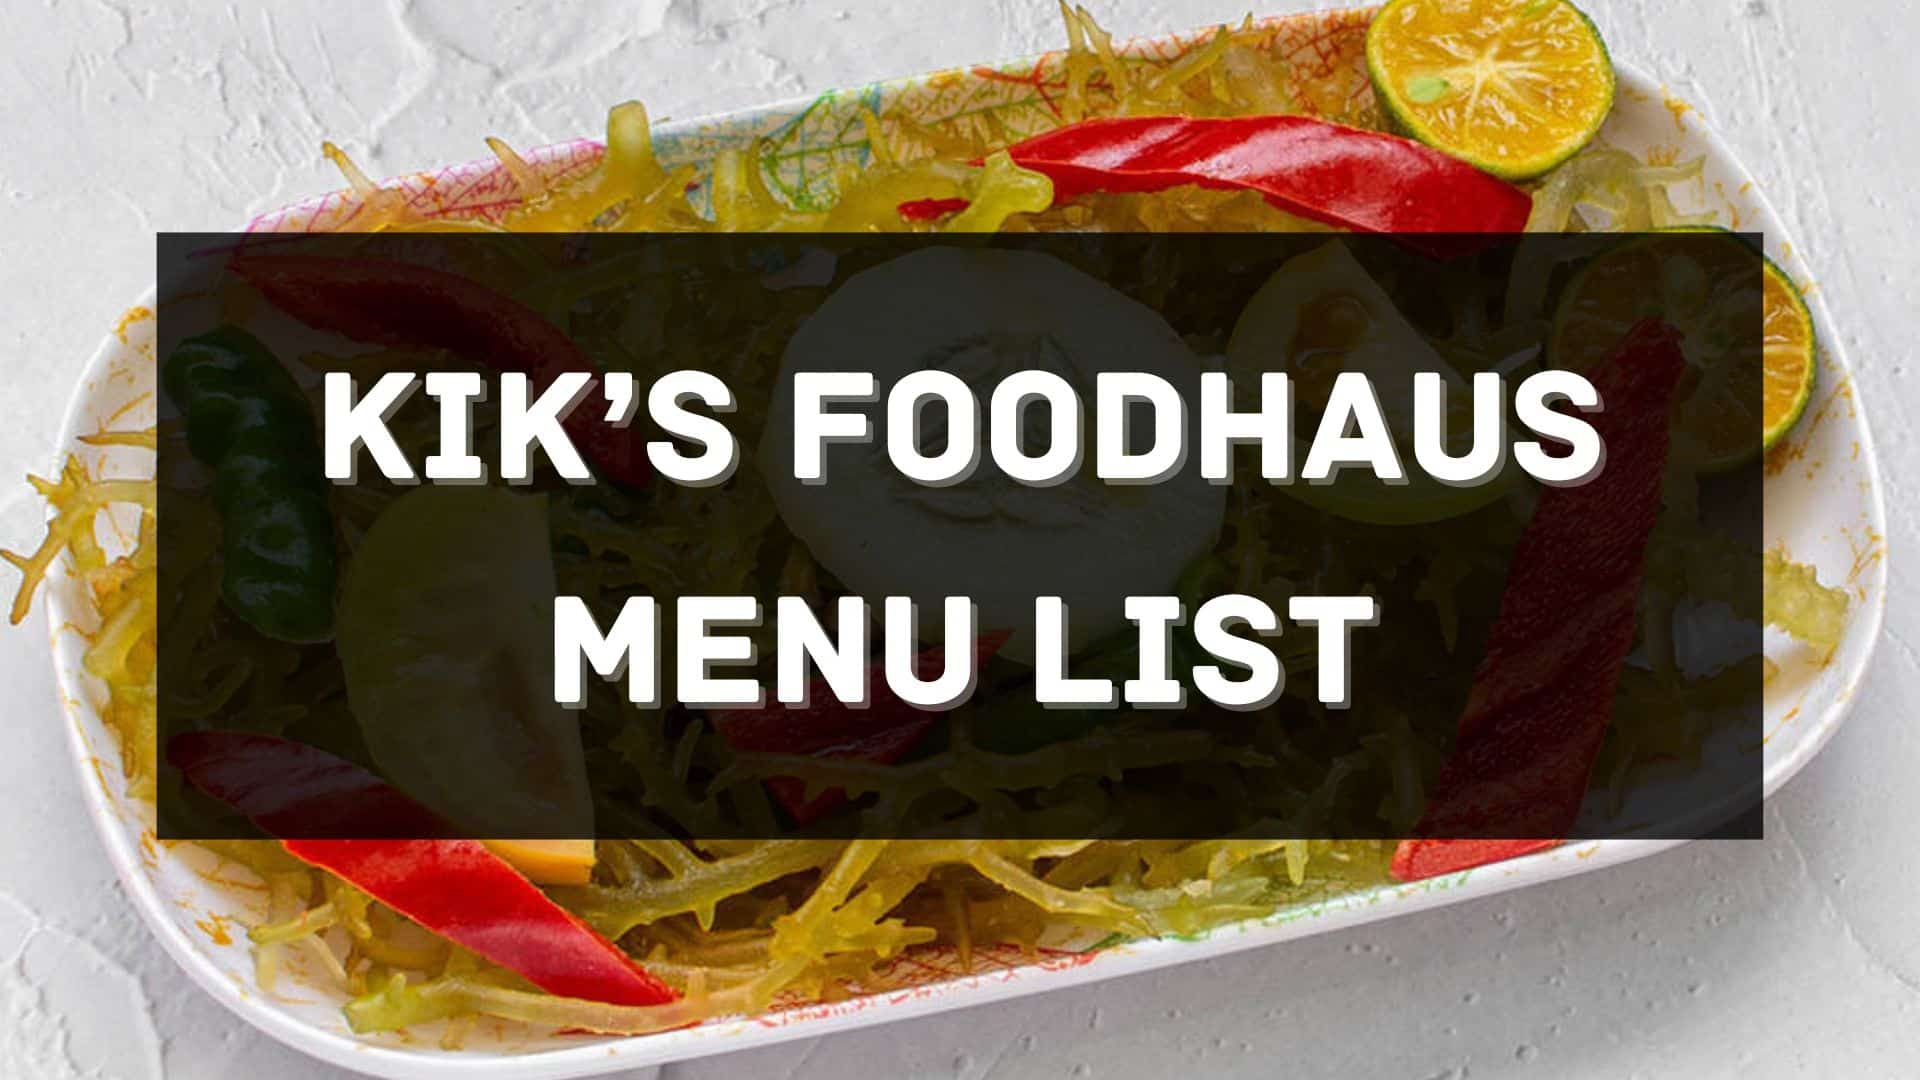 kik's foodhaus menu prices philippines